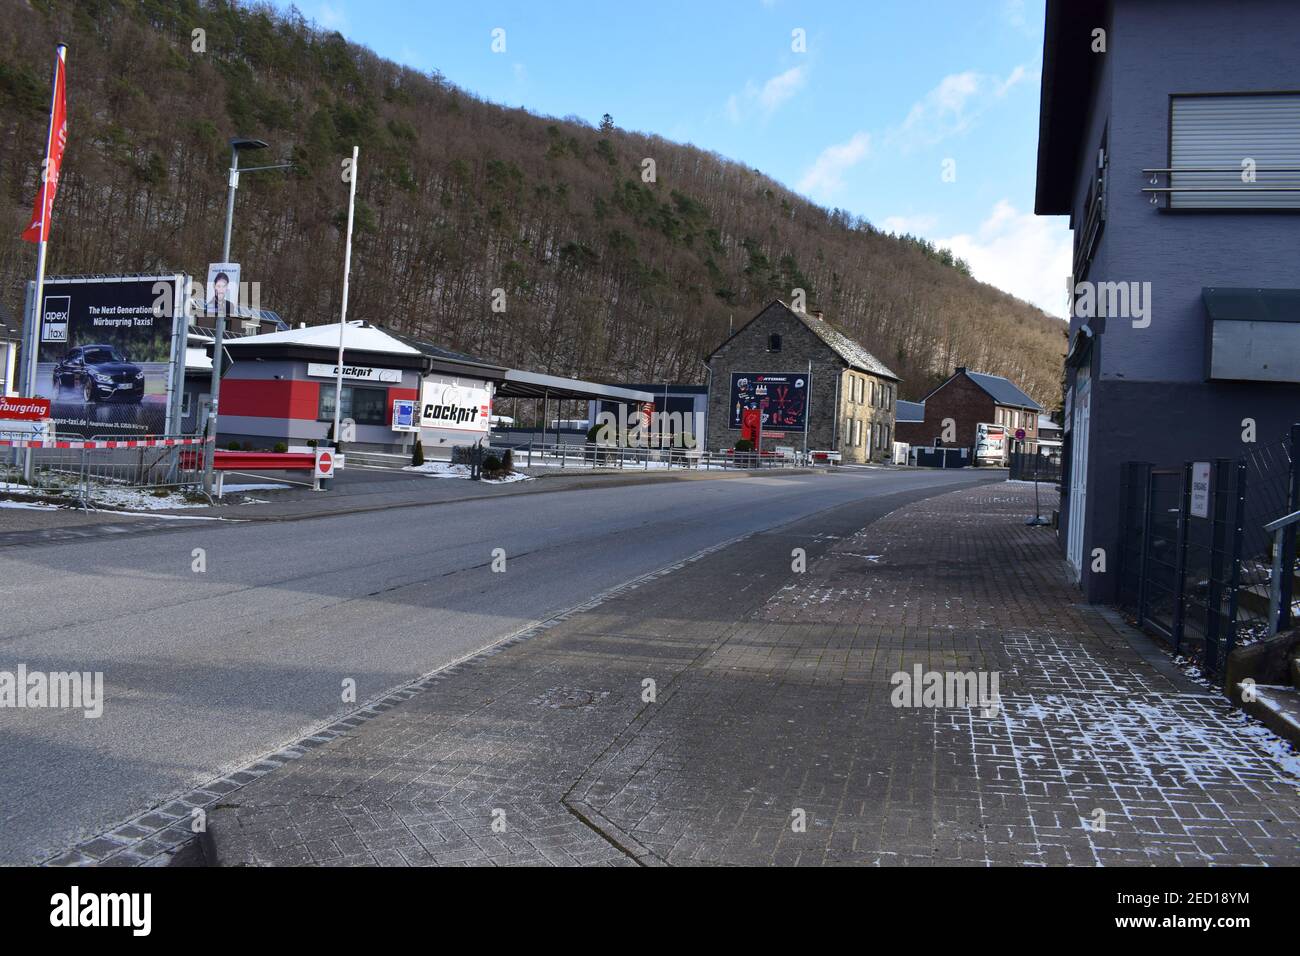 Nordschleife exit in Breidscheid with the closed restaurants in winter Stock Photo